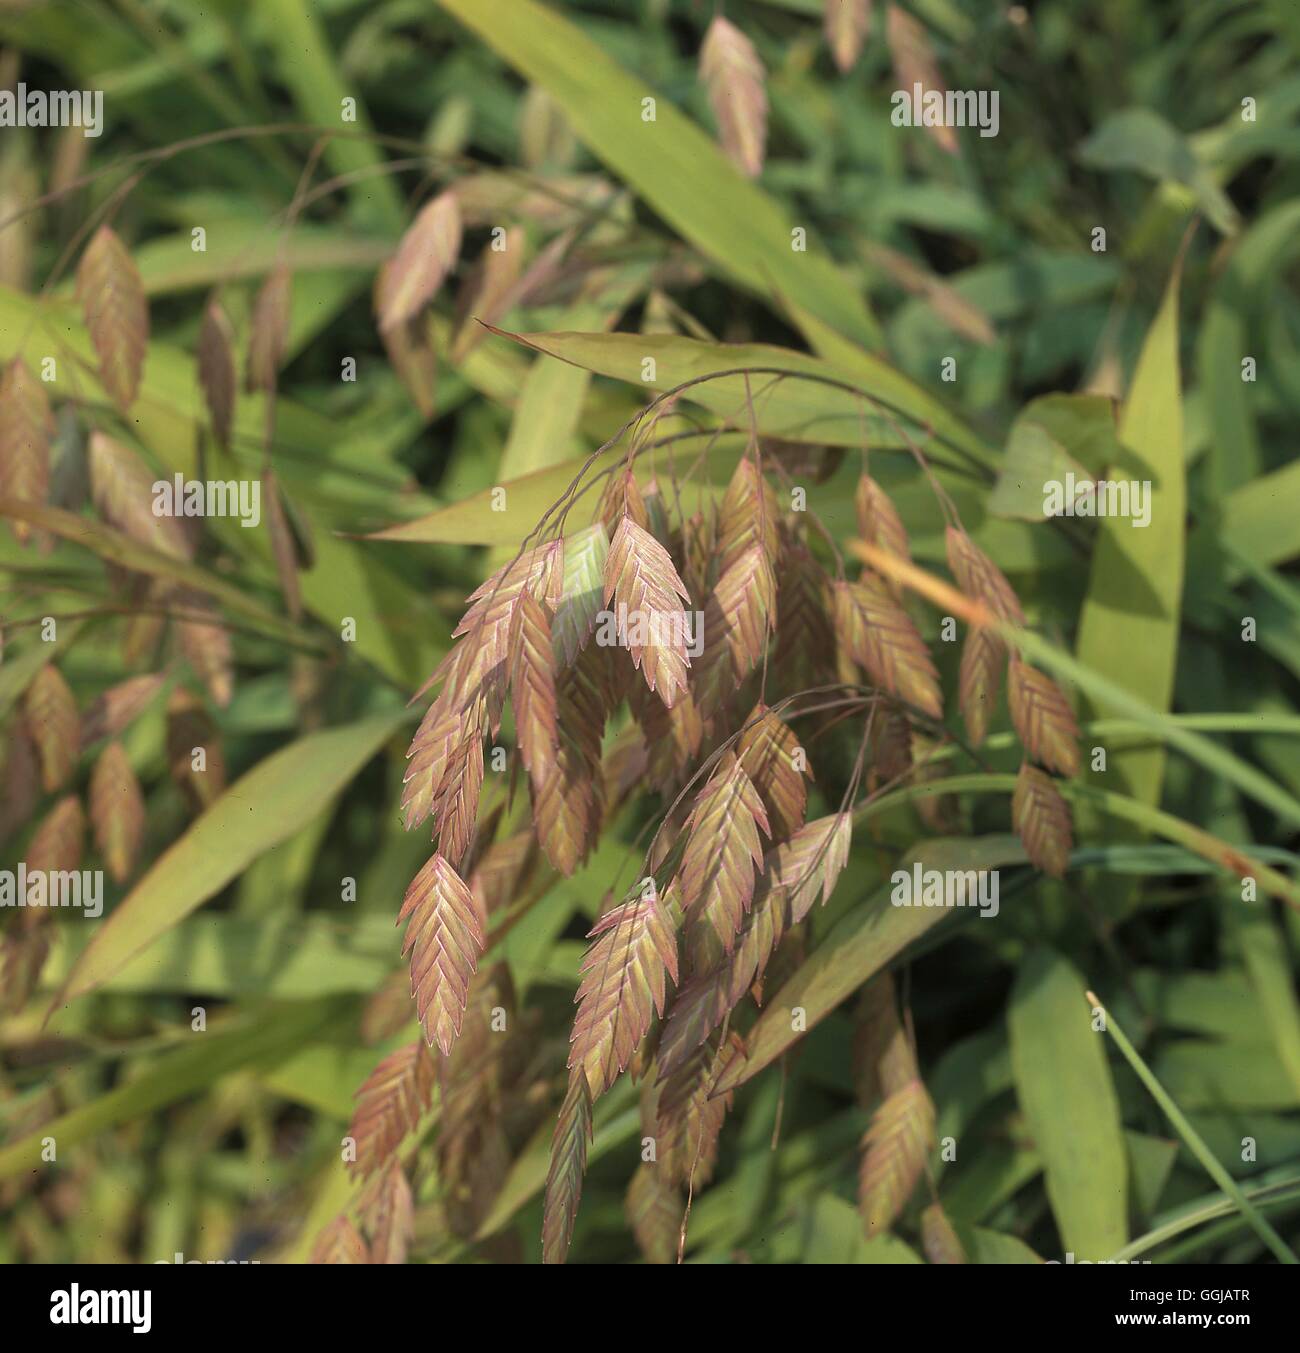 Chasmanthium latifolium Mare del Nord di avena' Data: 30.06.08 GRA109294 Foto di orticoltura Foto Stock